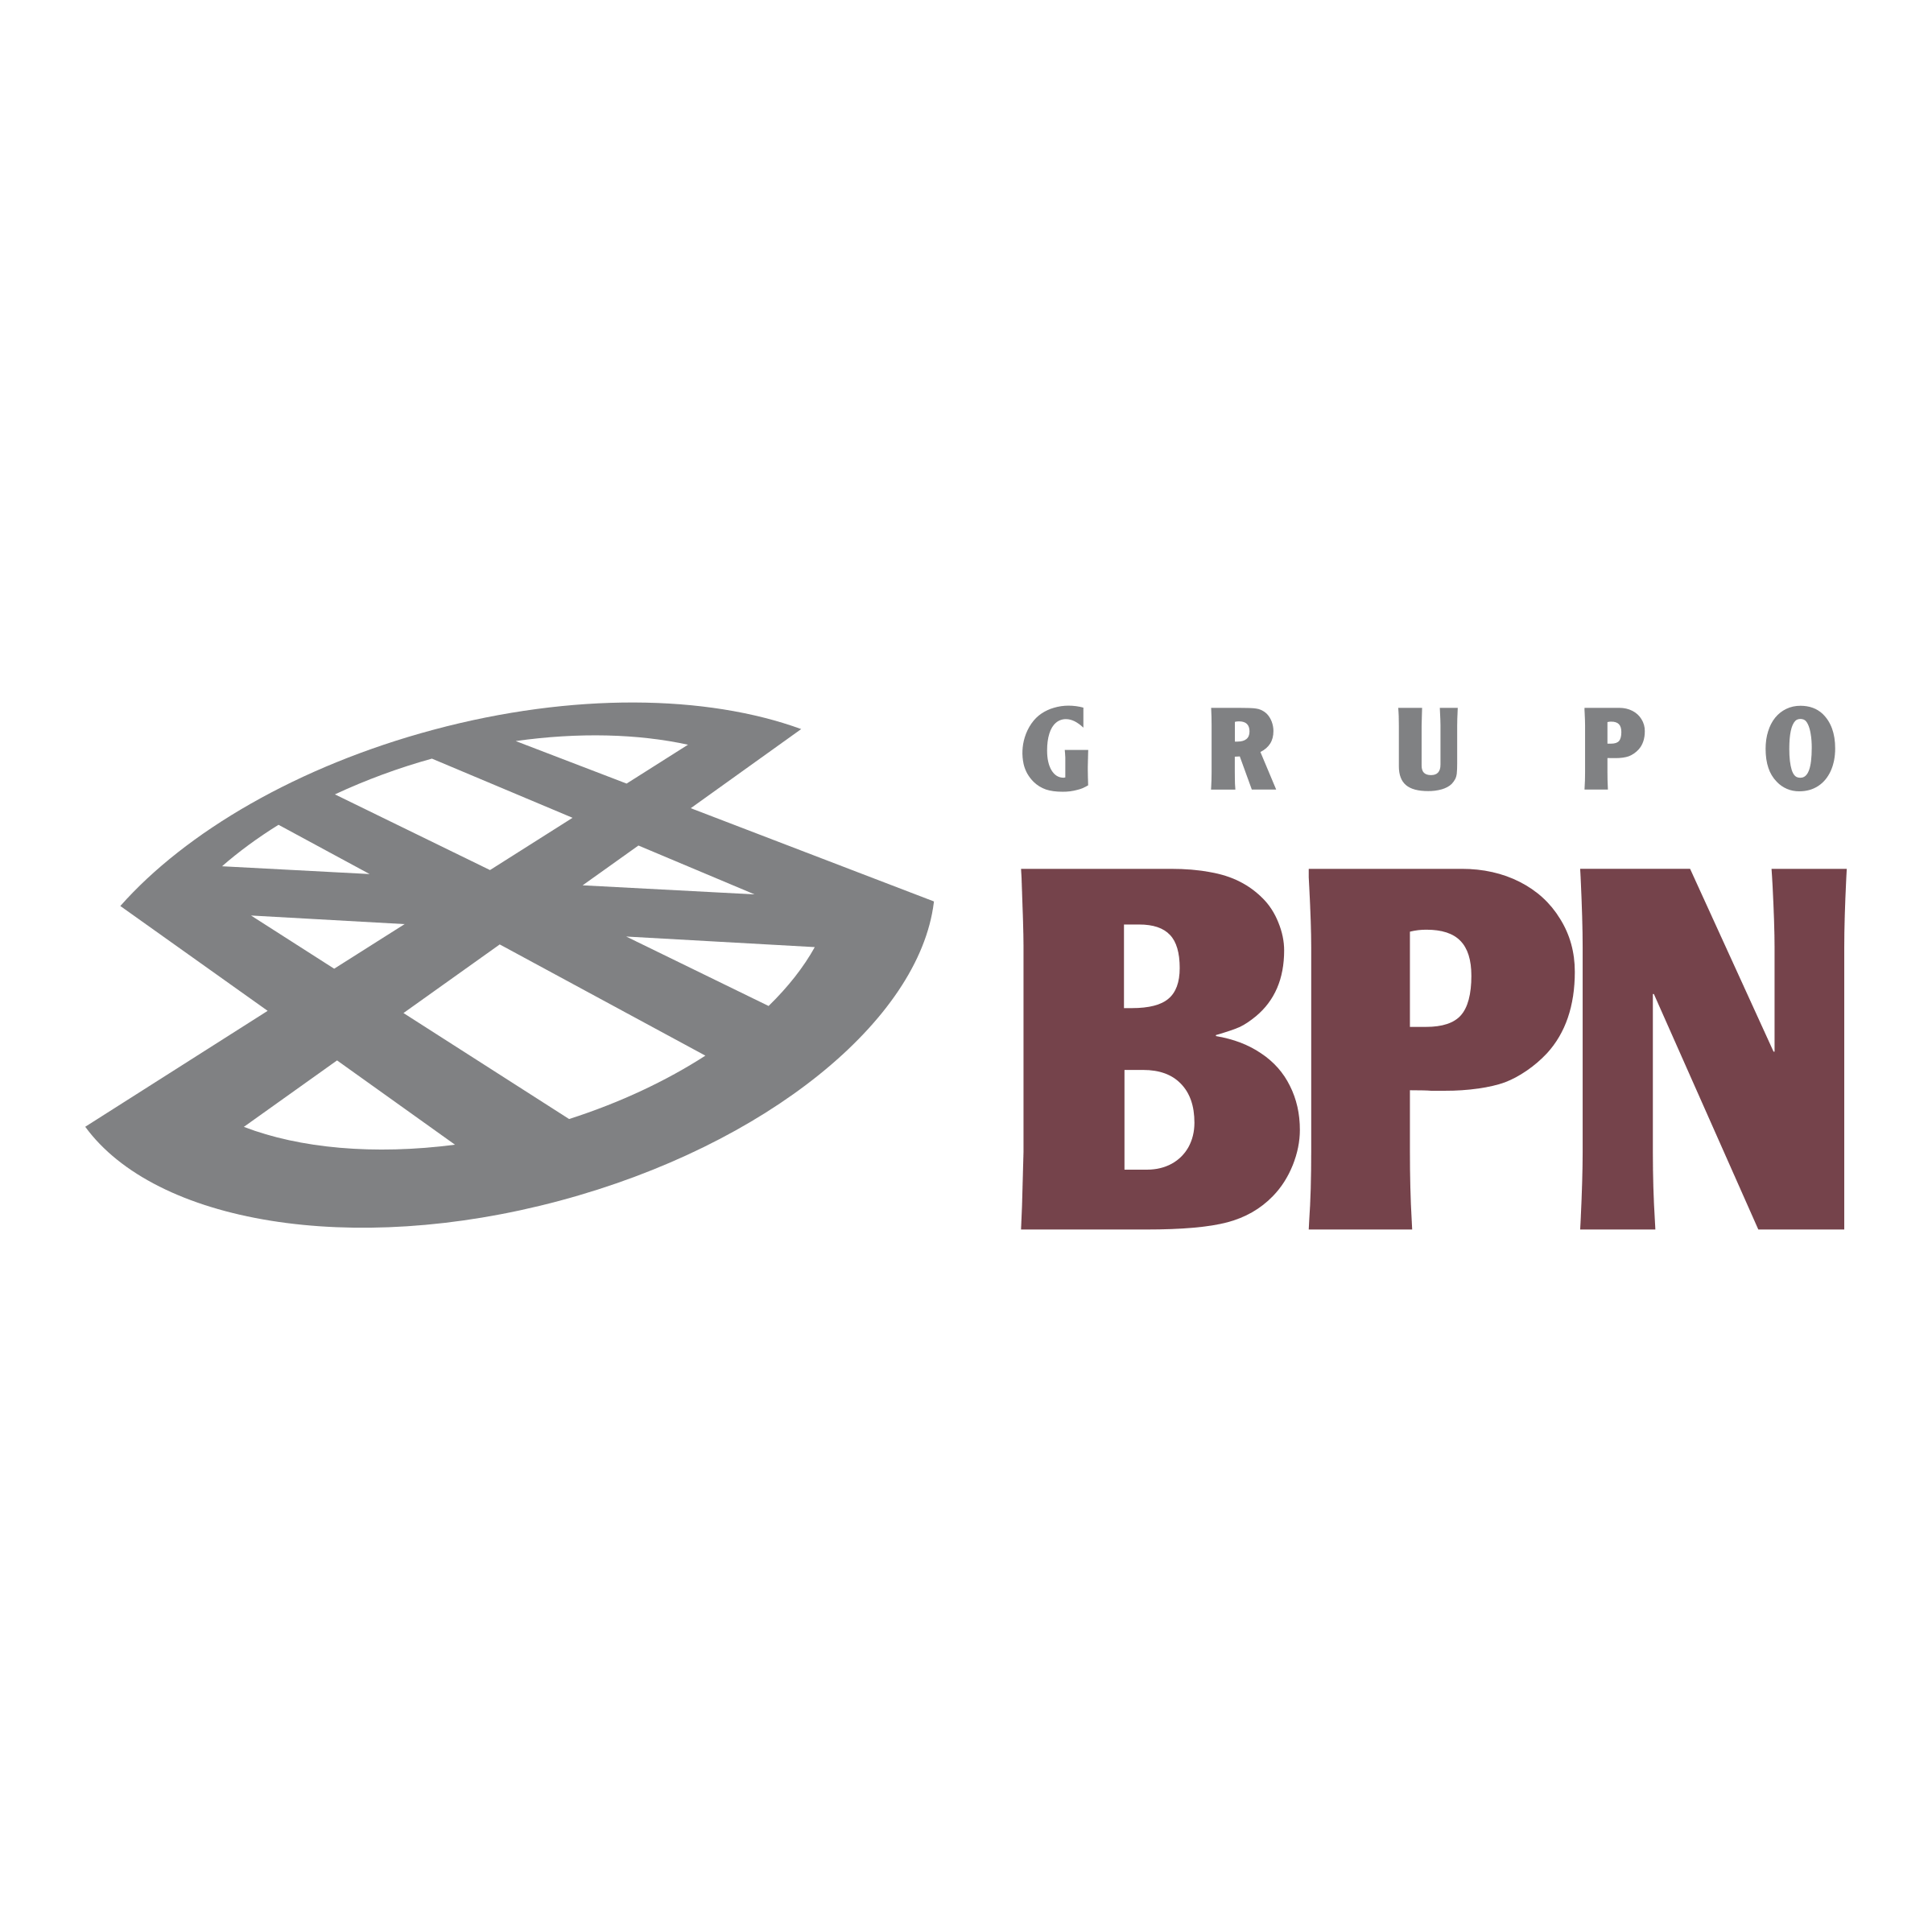 BPN Logo - BPN Logo PNG Transparent & SVG Vector - Freebie Supply